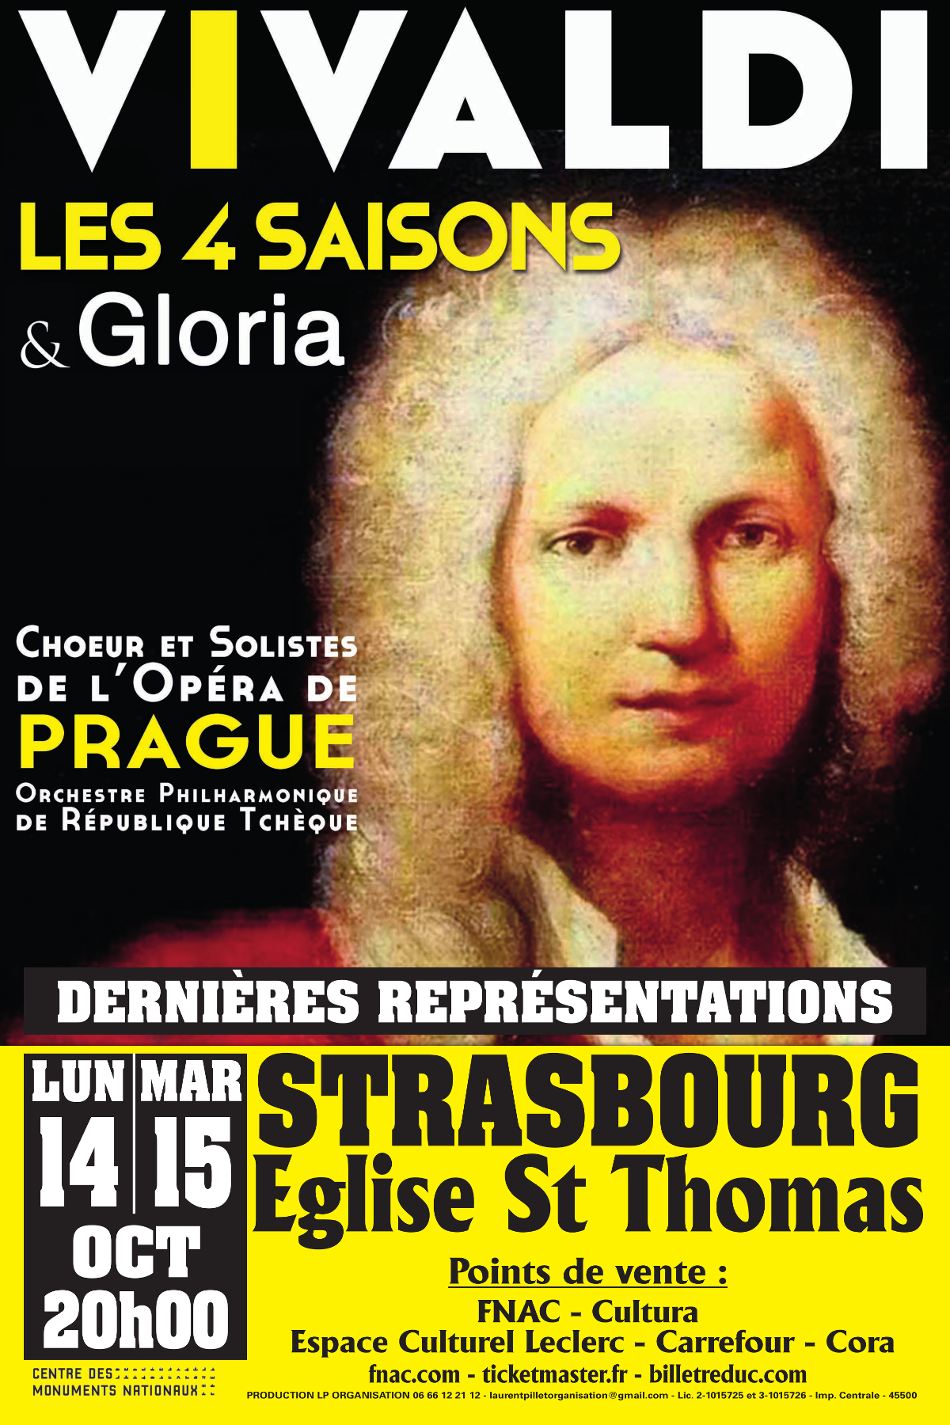 Concert Vivaldi Strasbourg